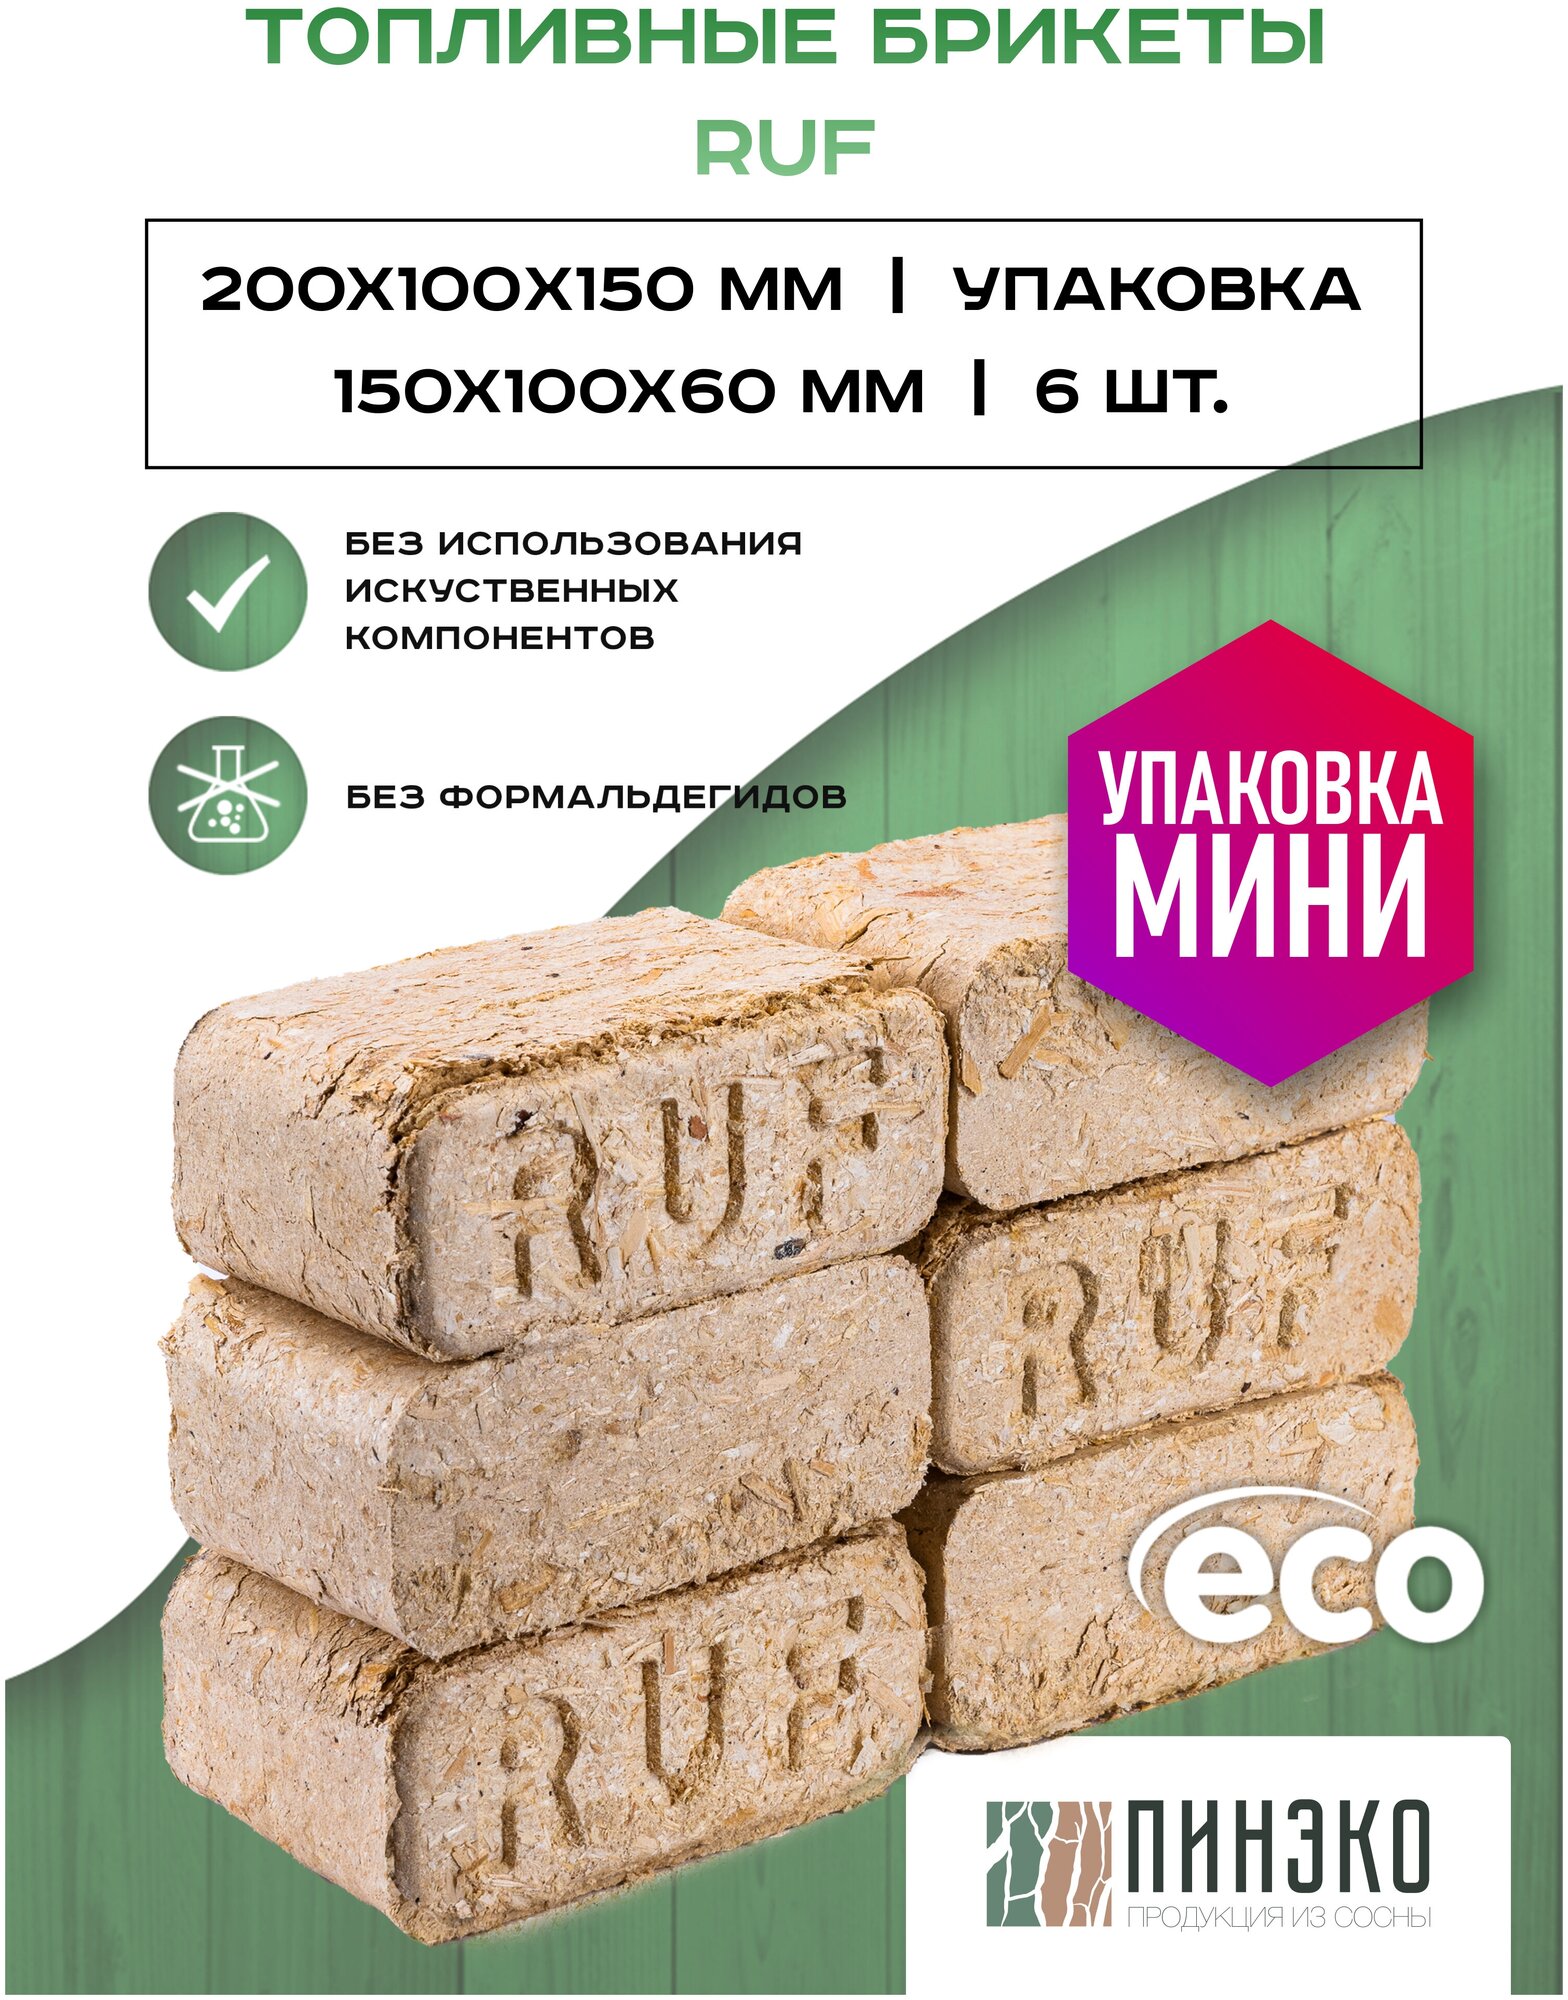 Мини упаковка Евродров / Топливные брикеты из сосны RUF люкс мини 6 ШТ / Сухие опилки дрова для длительного горения